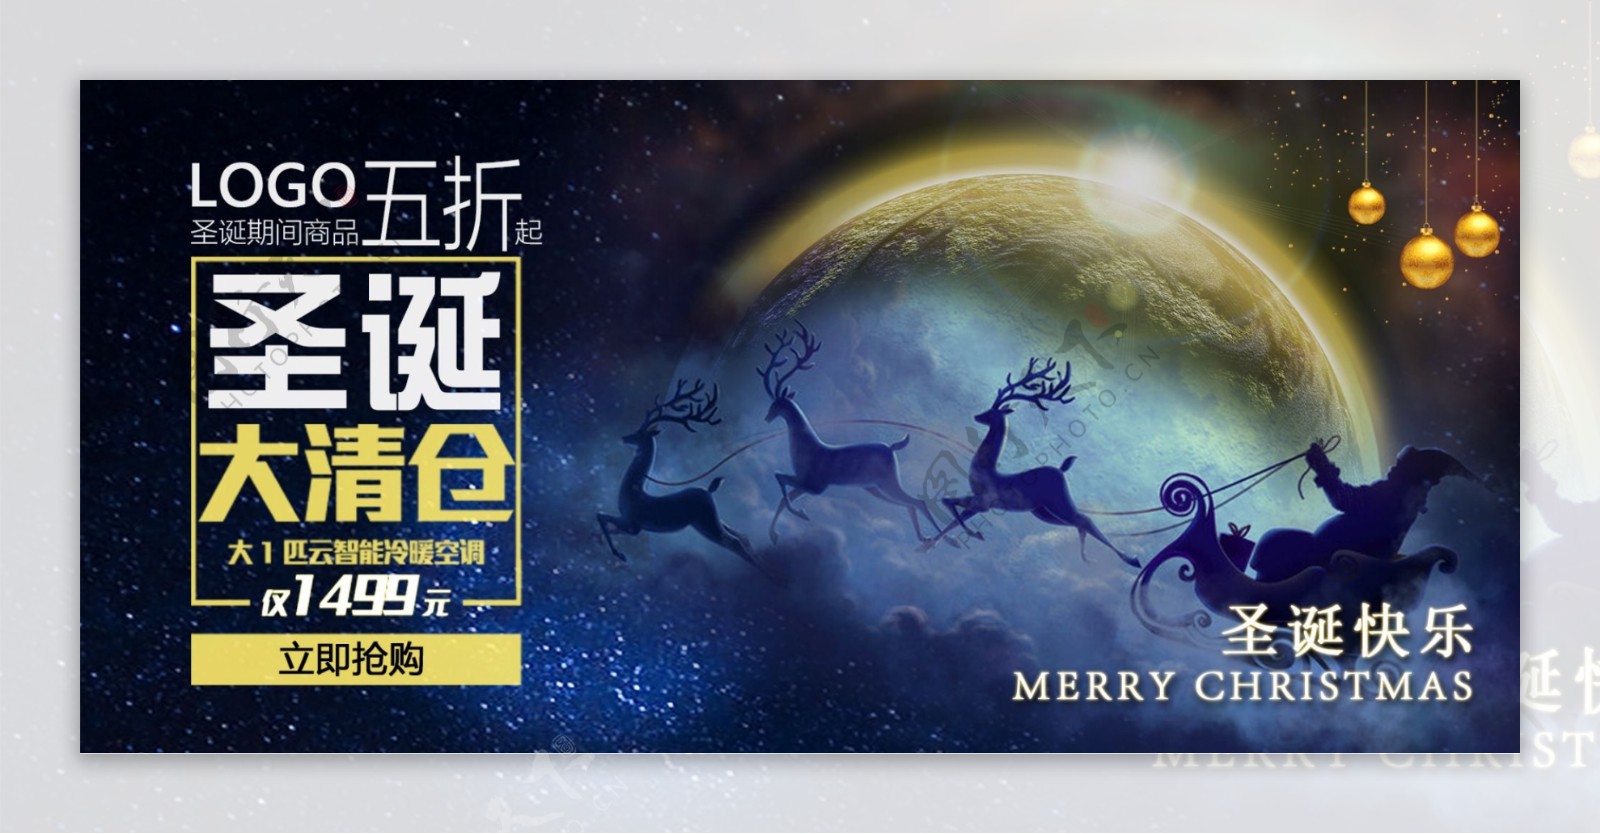 梦幻圣诞促销活动圣诞节banner